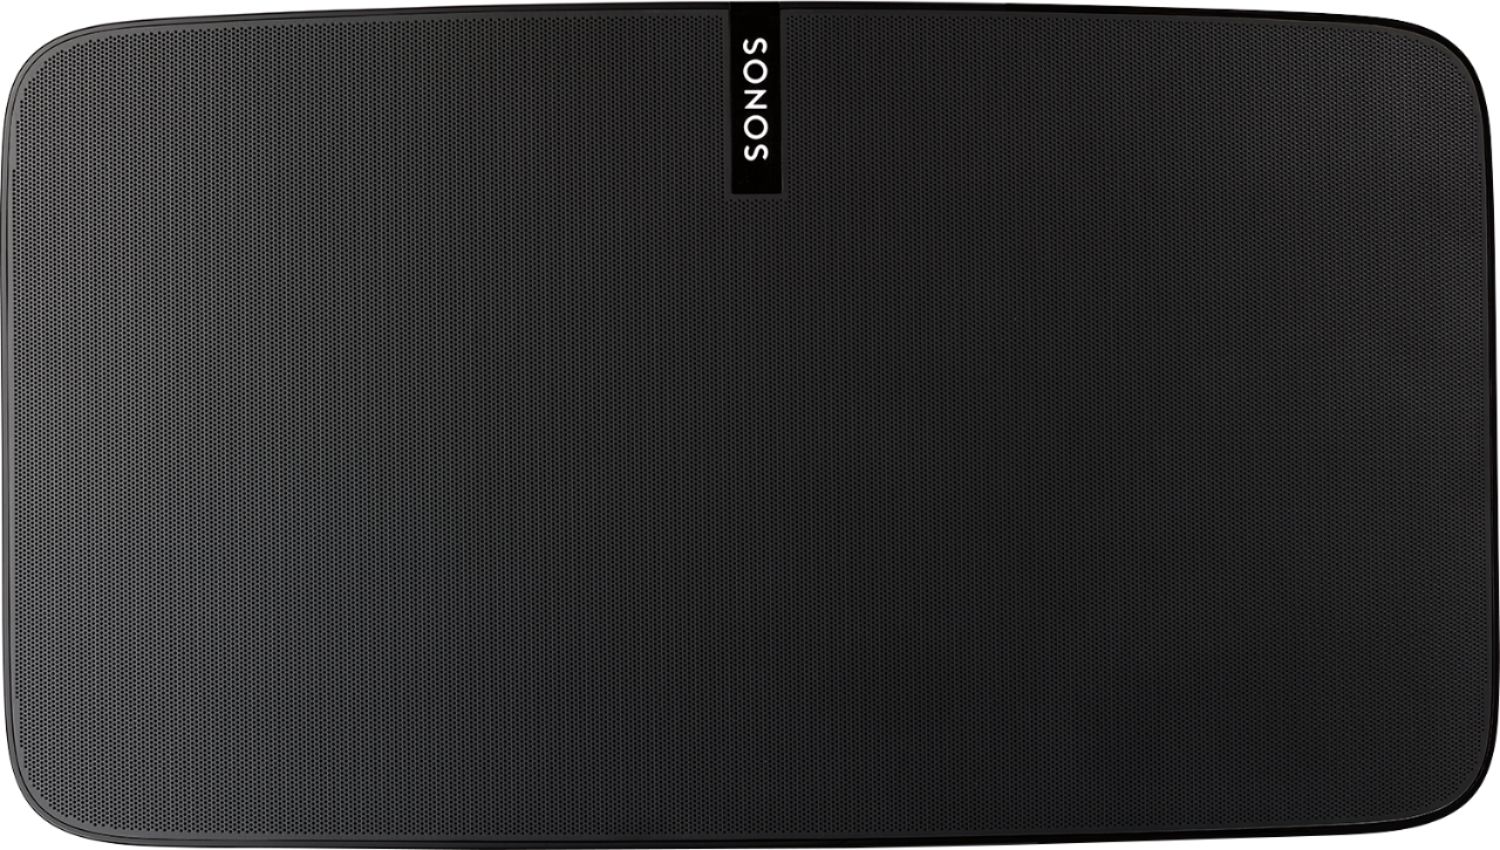 Sonos Geek Squad Refurbished 5 Powered Wireless 2-Way Speaker Matte Black GSRF-PL5G2US1BLK - Best Buy